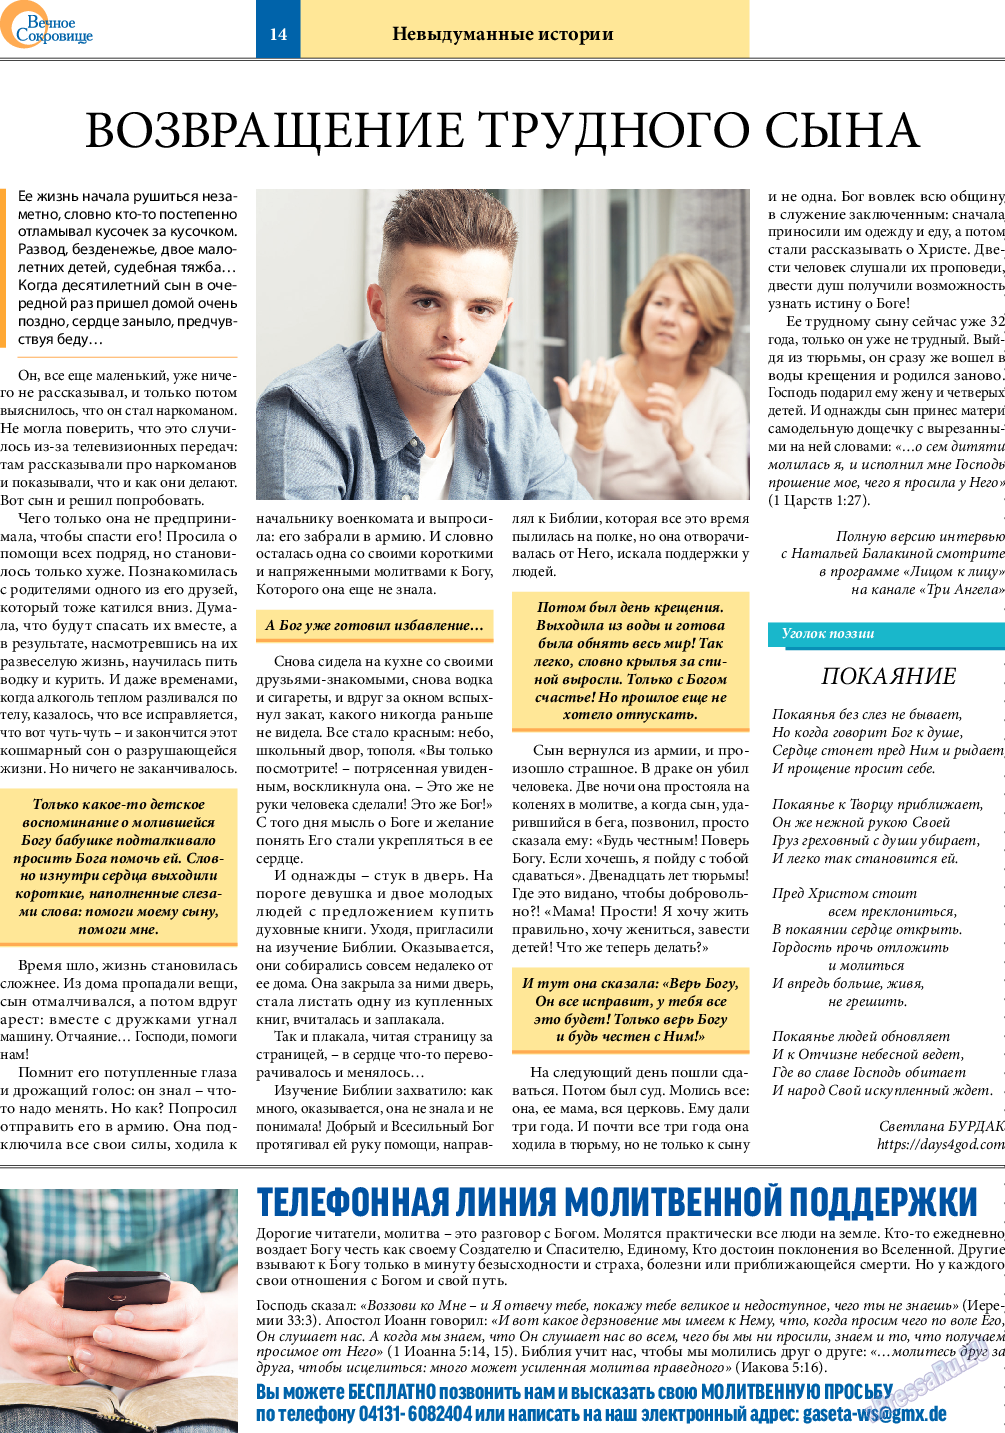 Вечное сокровище, газета. 2022 №1 стр.14